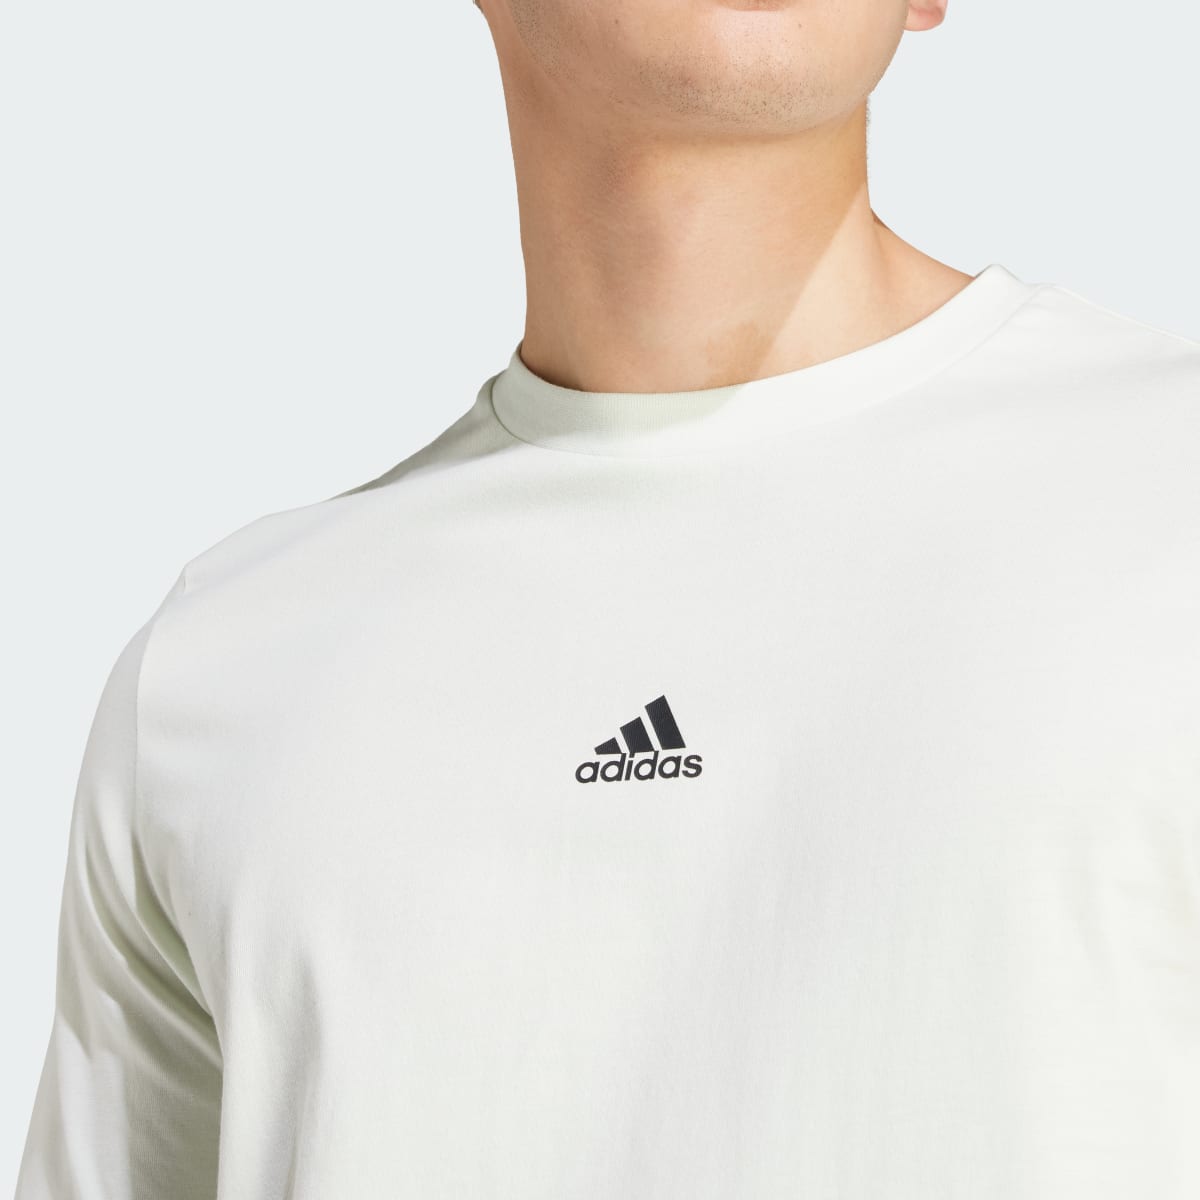 Adidas House of Tiro Graphic T-Shirt. 5